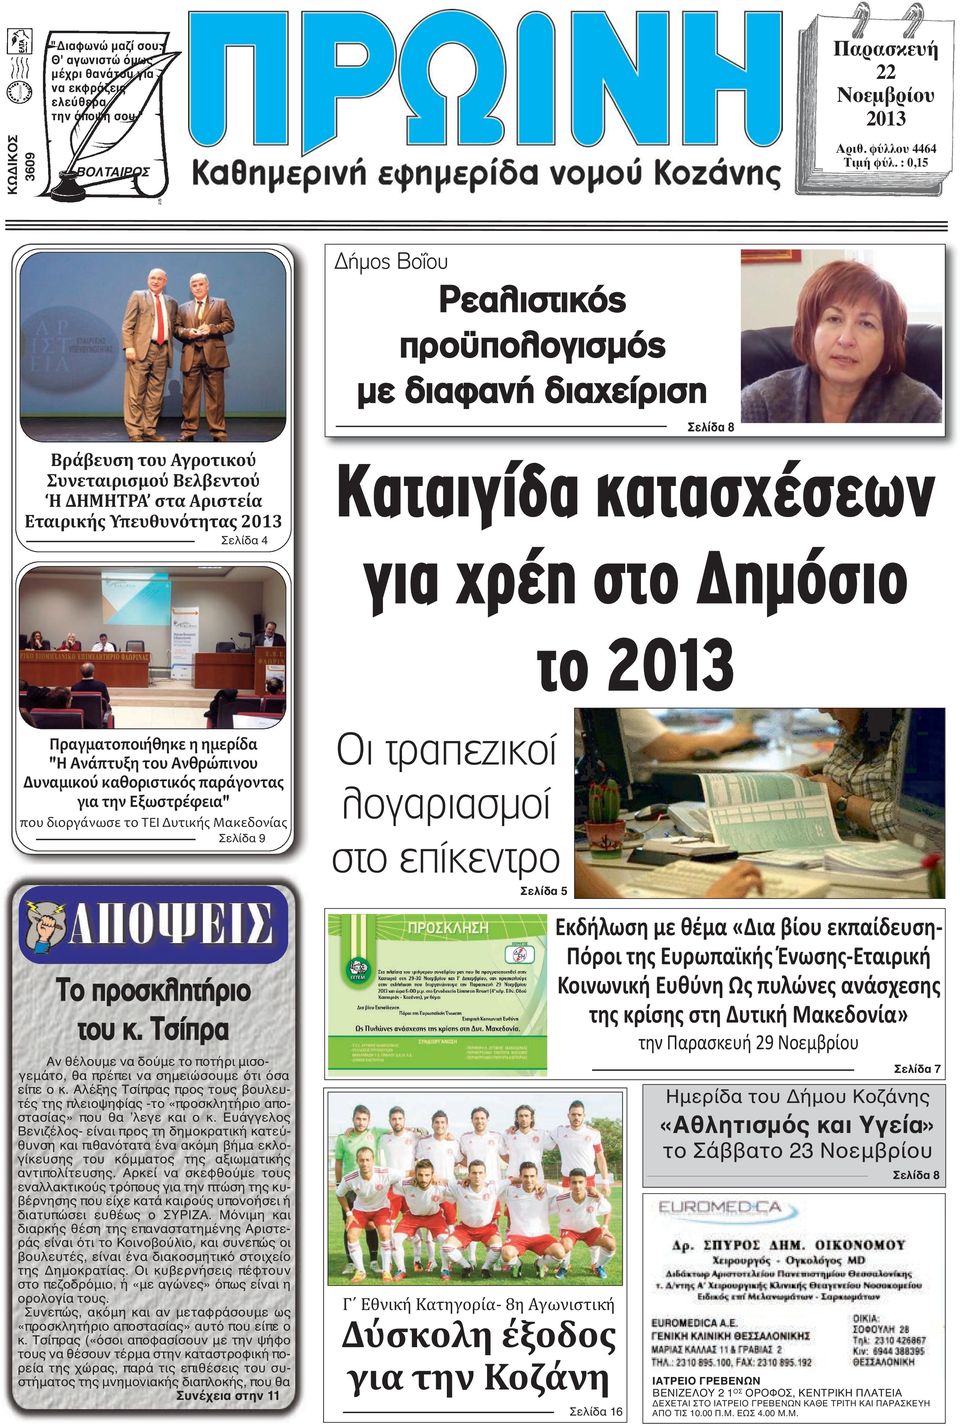 κατασχέσεων για χρέη στο ηµόσιο το 2013 Πραγματοποιήθηκε η ημερίδα "Η Ανάπτυξη του Ανθρώπινου Δυναμικού καθοριστικός παράγοντας για την Εξωστρέφεια" που διοργάνωσε το ΤΕΙ Δυτικής Μακεδονίας Σελίδα 9